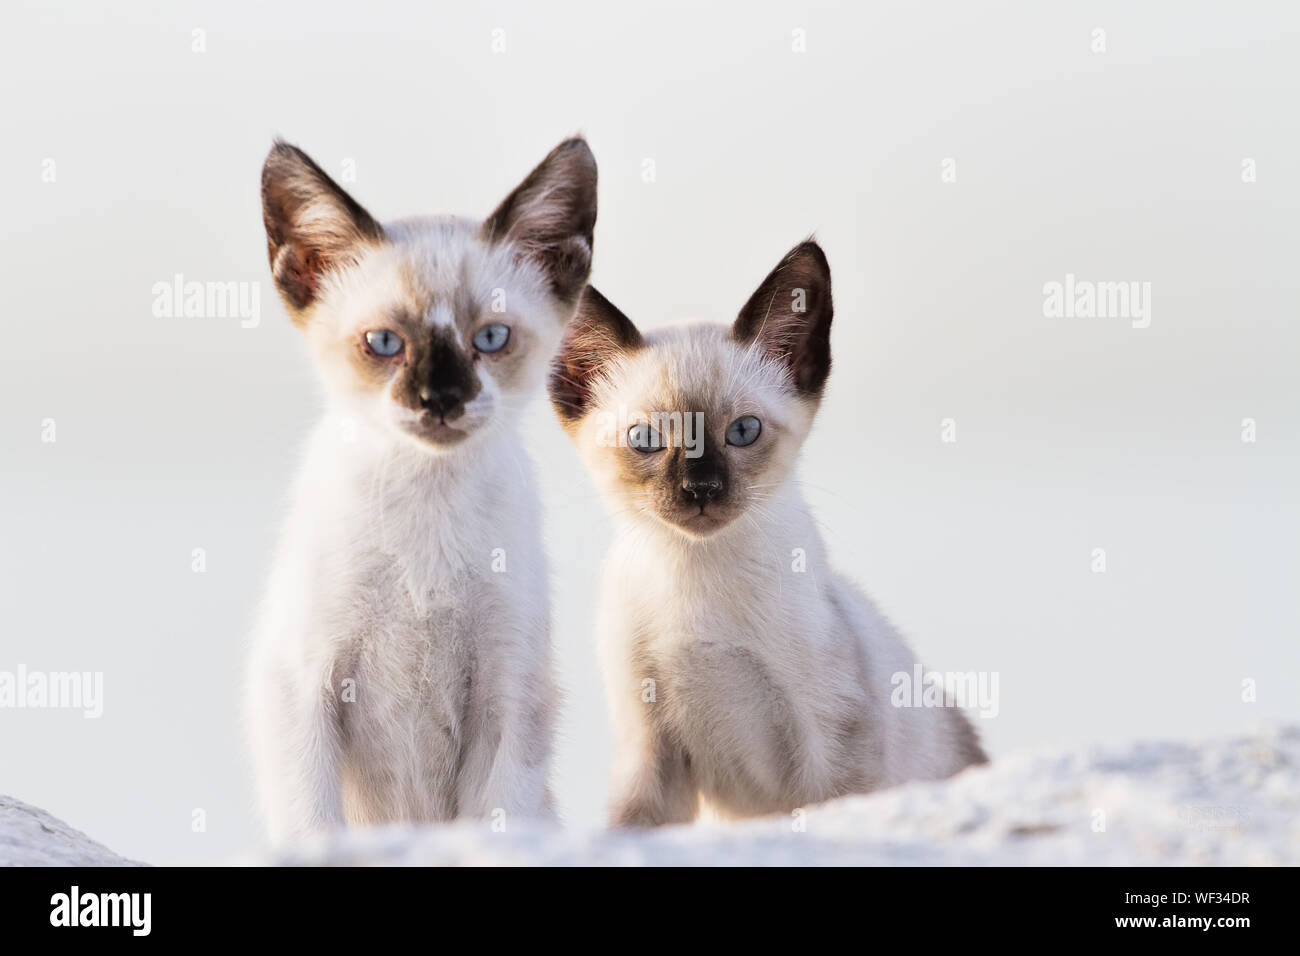 Close-up retrato de gatos salvajes contra el fondo blanco. Foto de stock